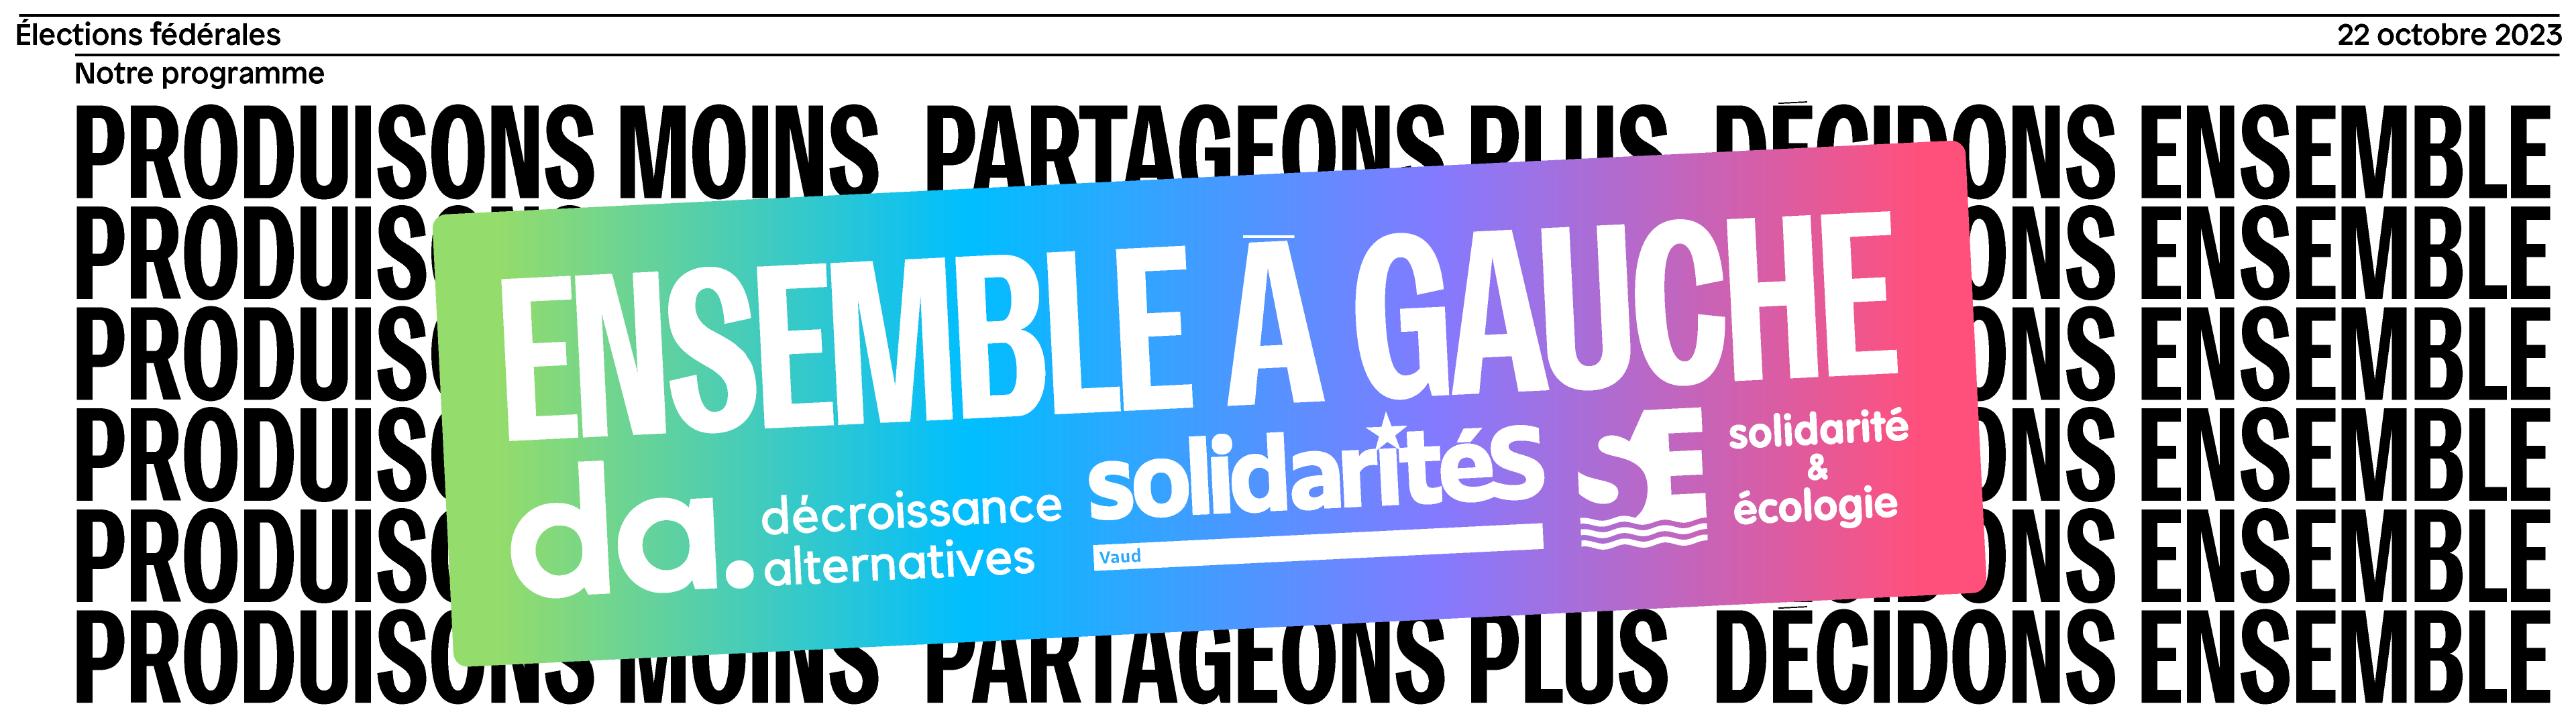 Bannière d'Ensemble à Gauche Vaud pour les élections fédérales 2023